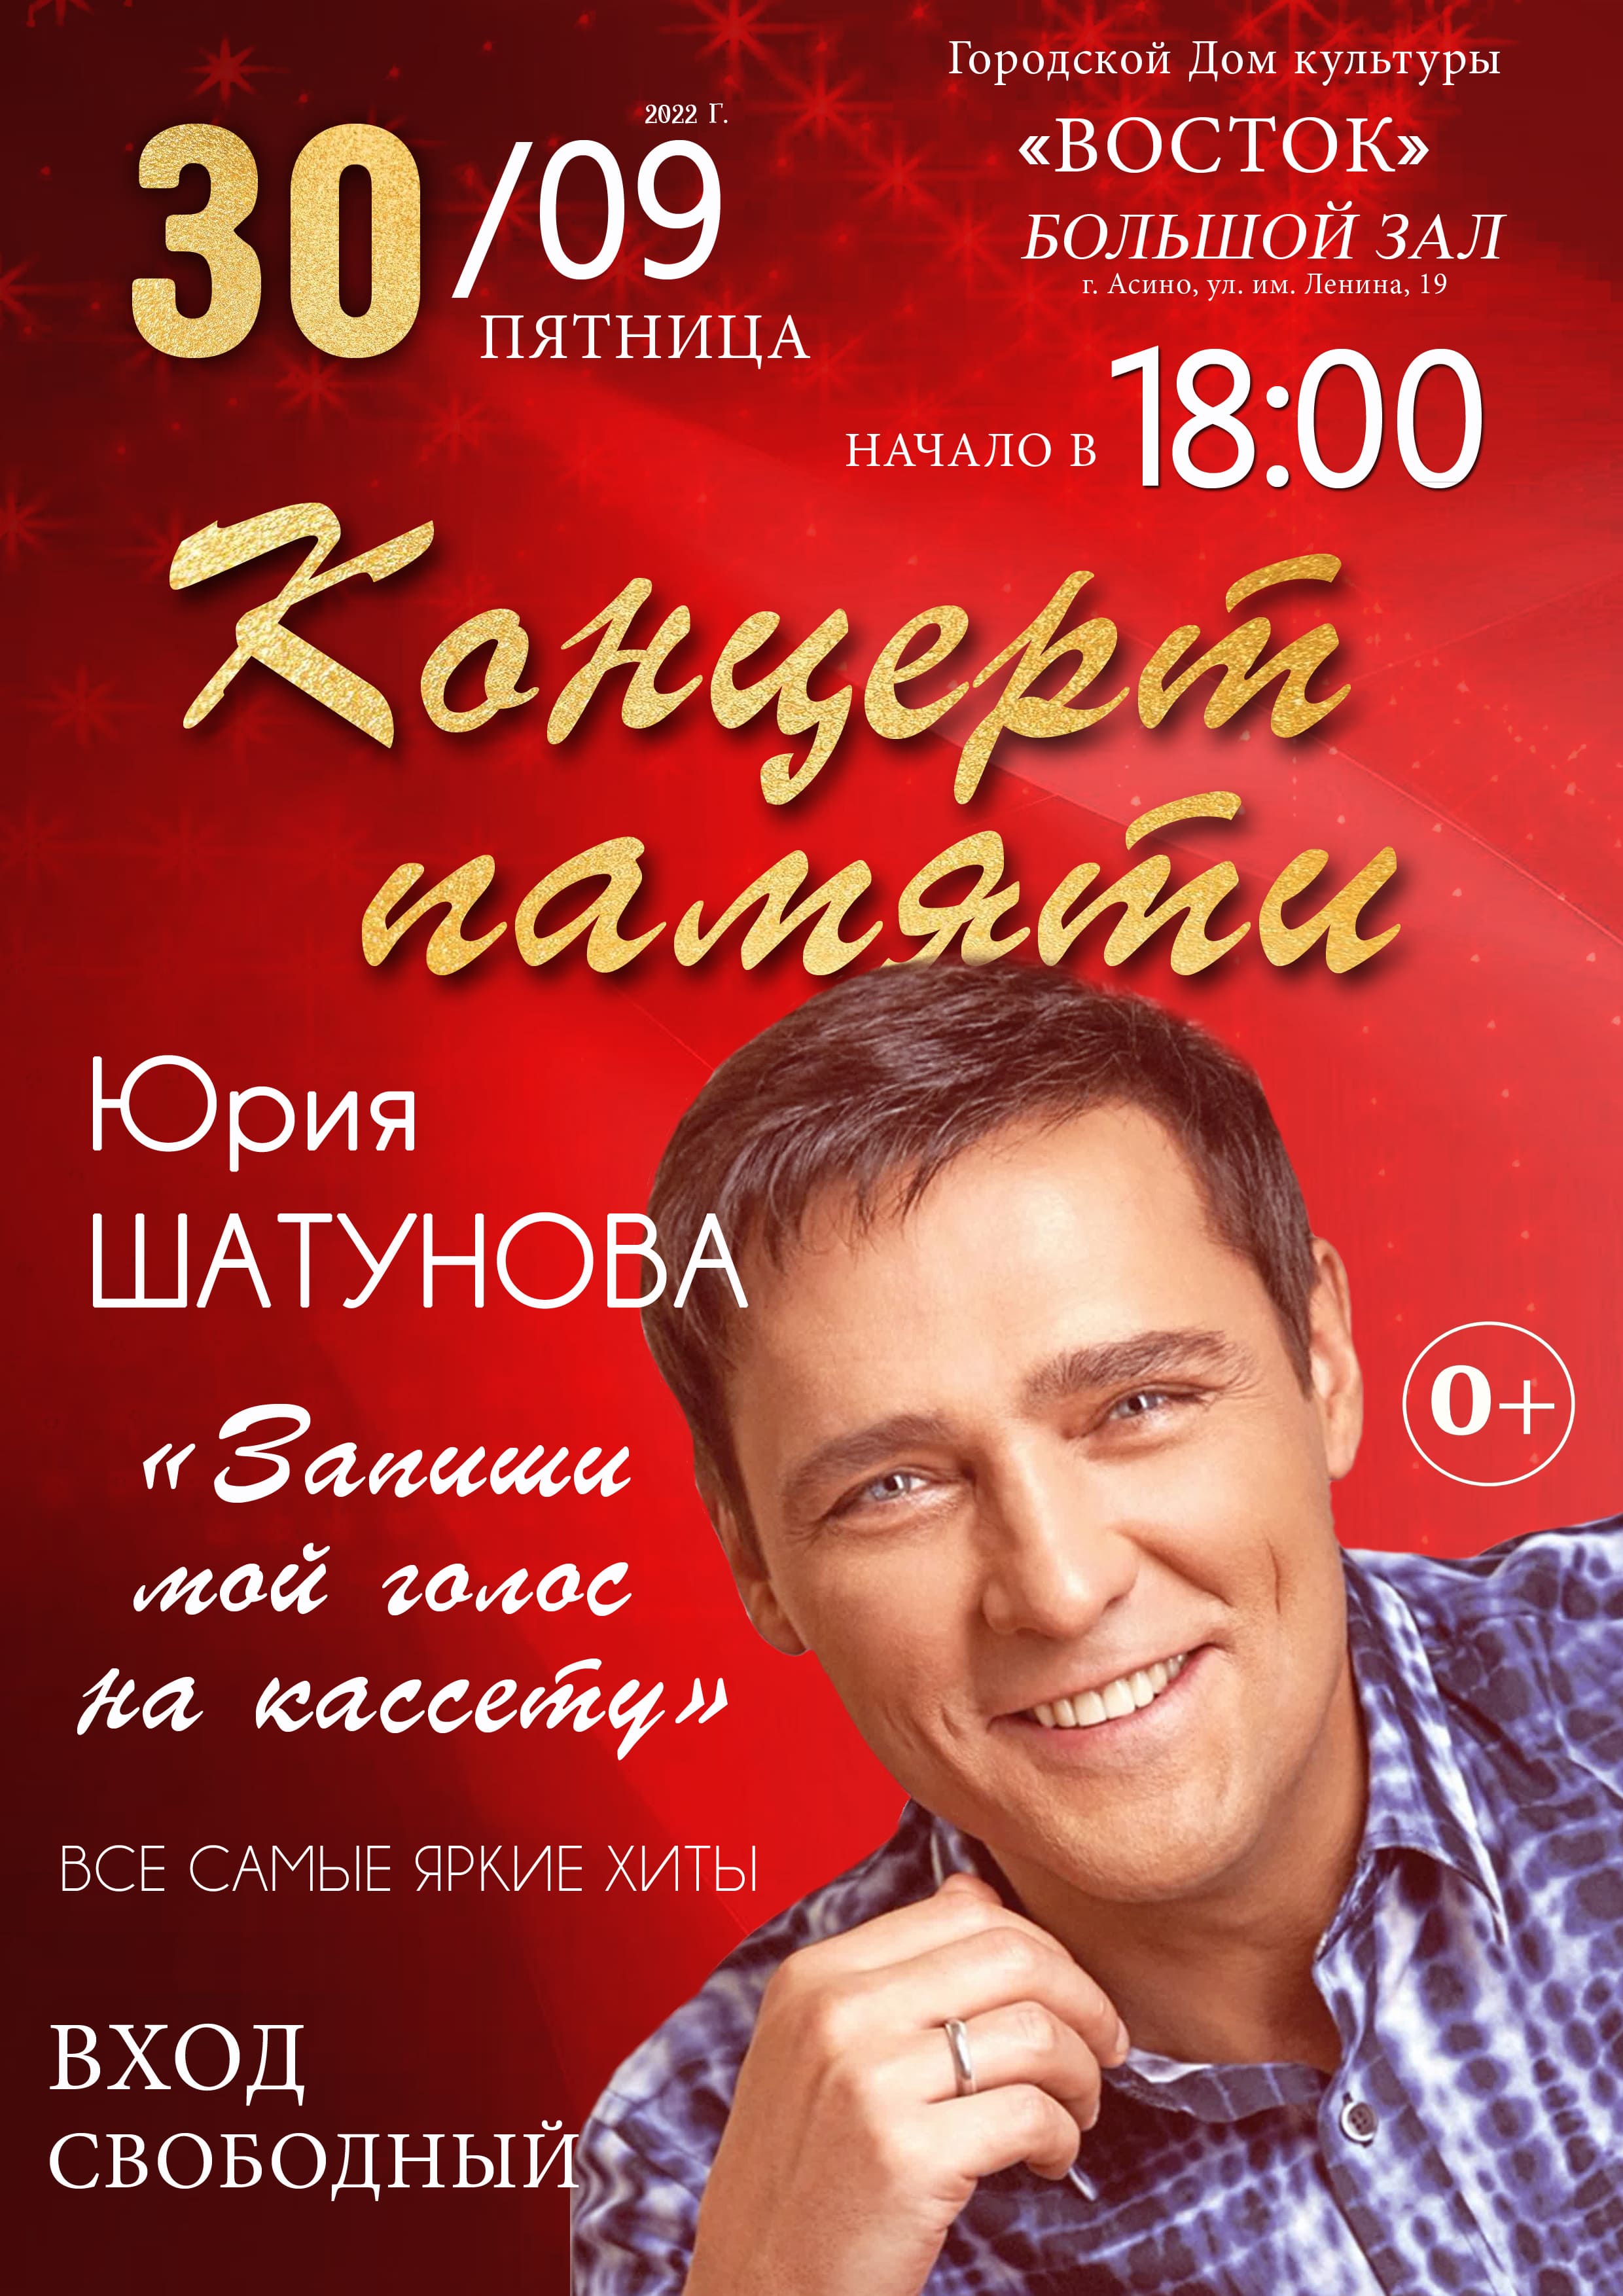 Афиша концерт памяти Юрия Шатунова 2022 1